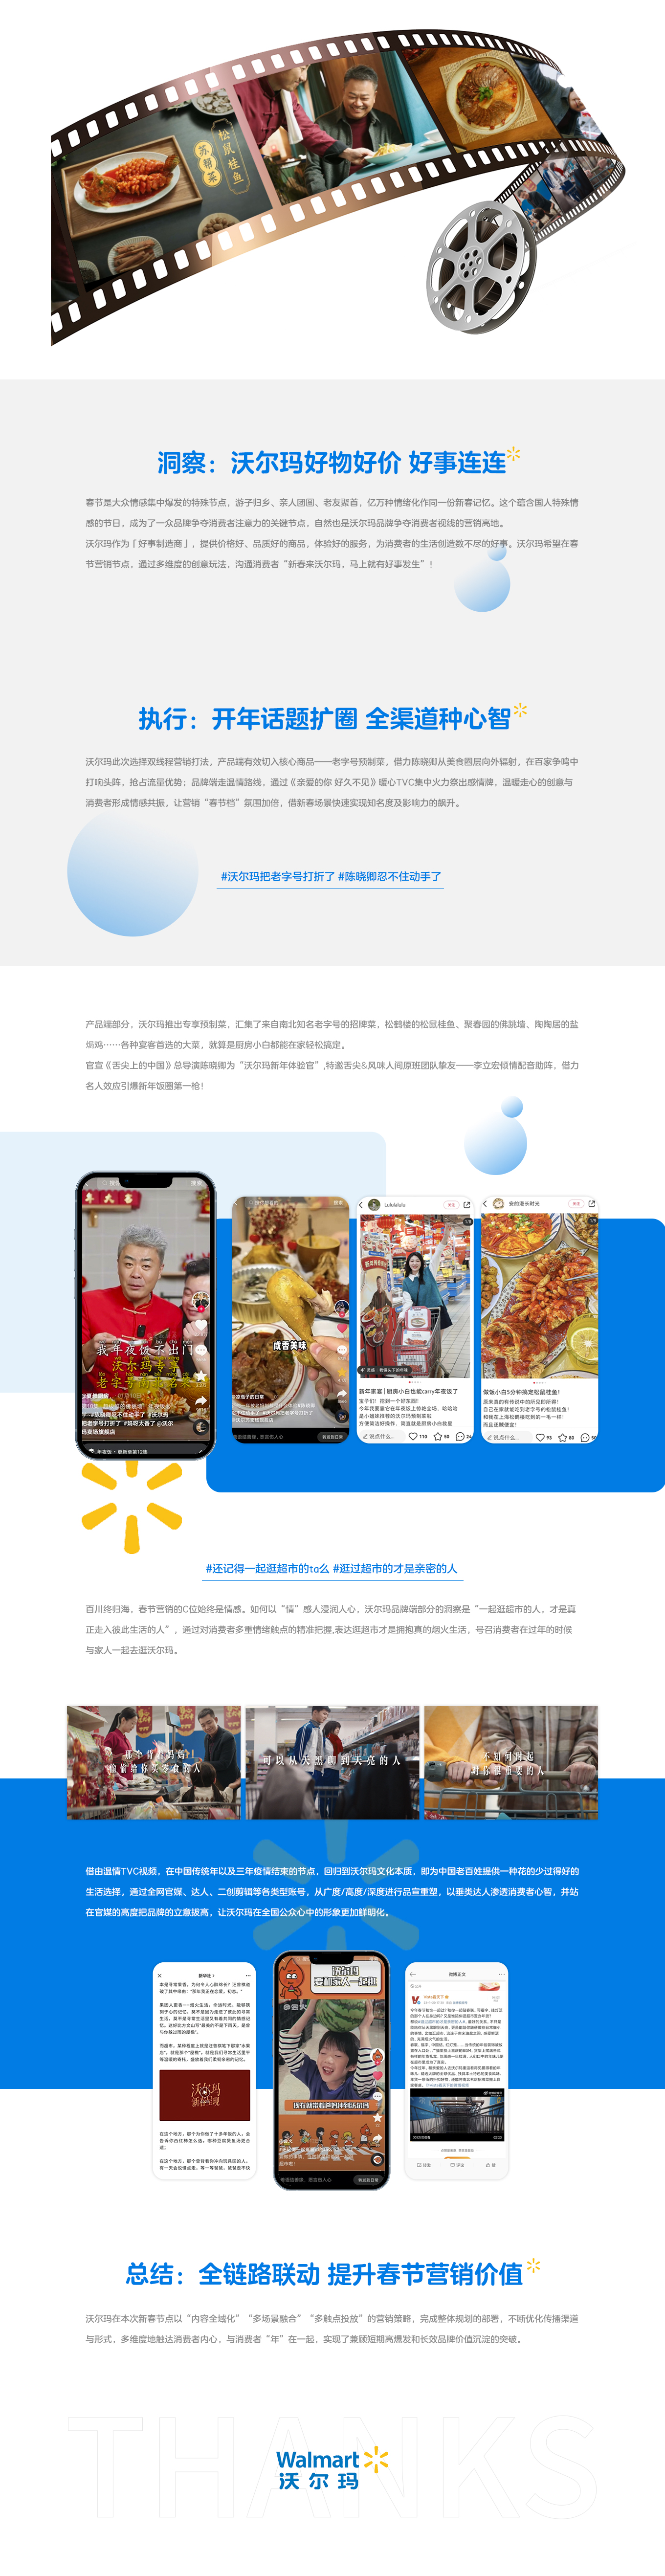 沃尔玛2023 CNY传播策略-新媒体营销,新媒体广告公司,上海网络营销,微信代运营,高端网站建设,网站建设公司